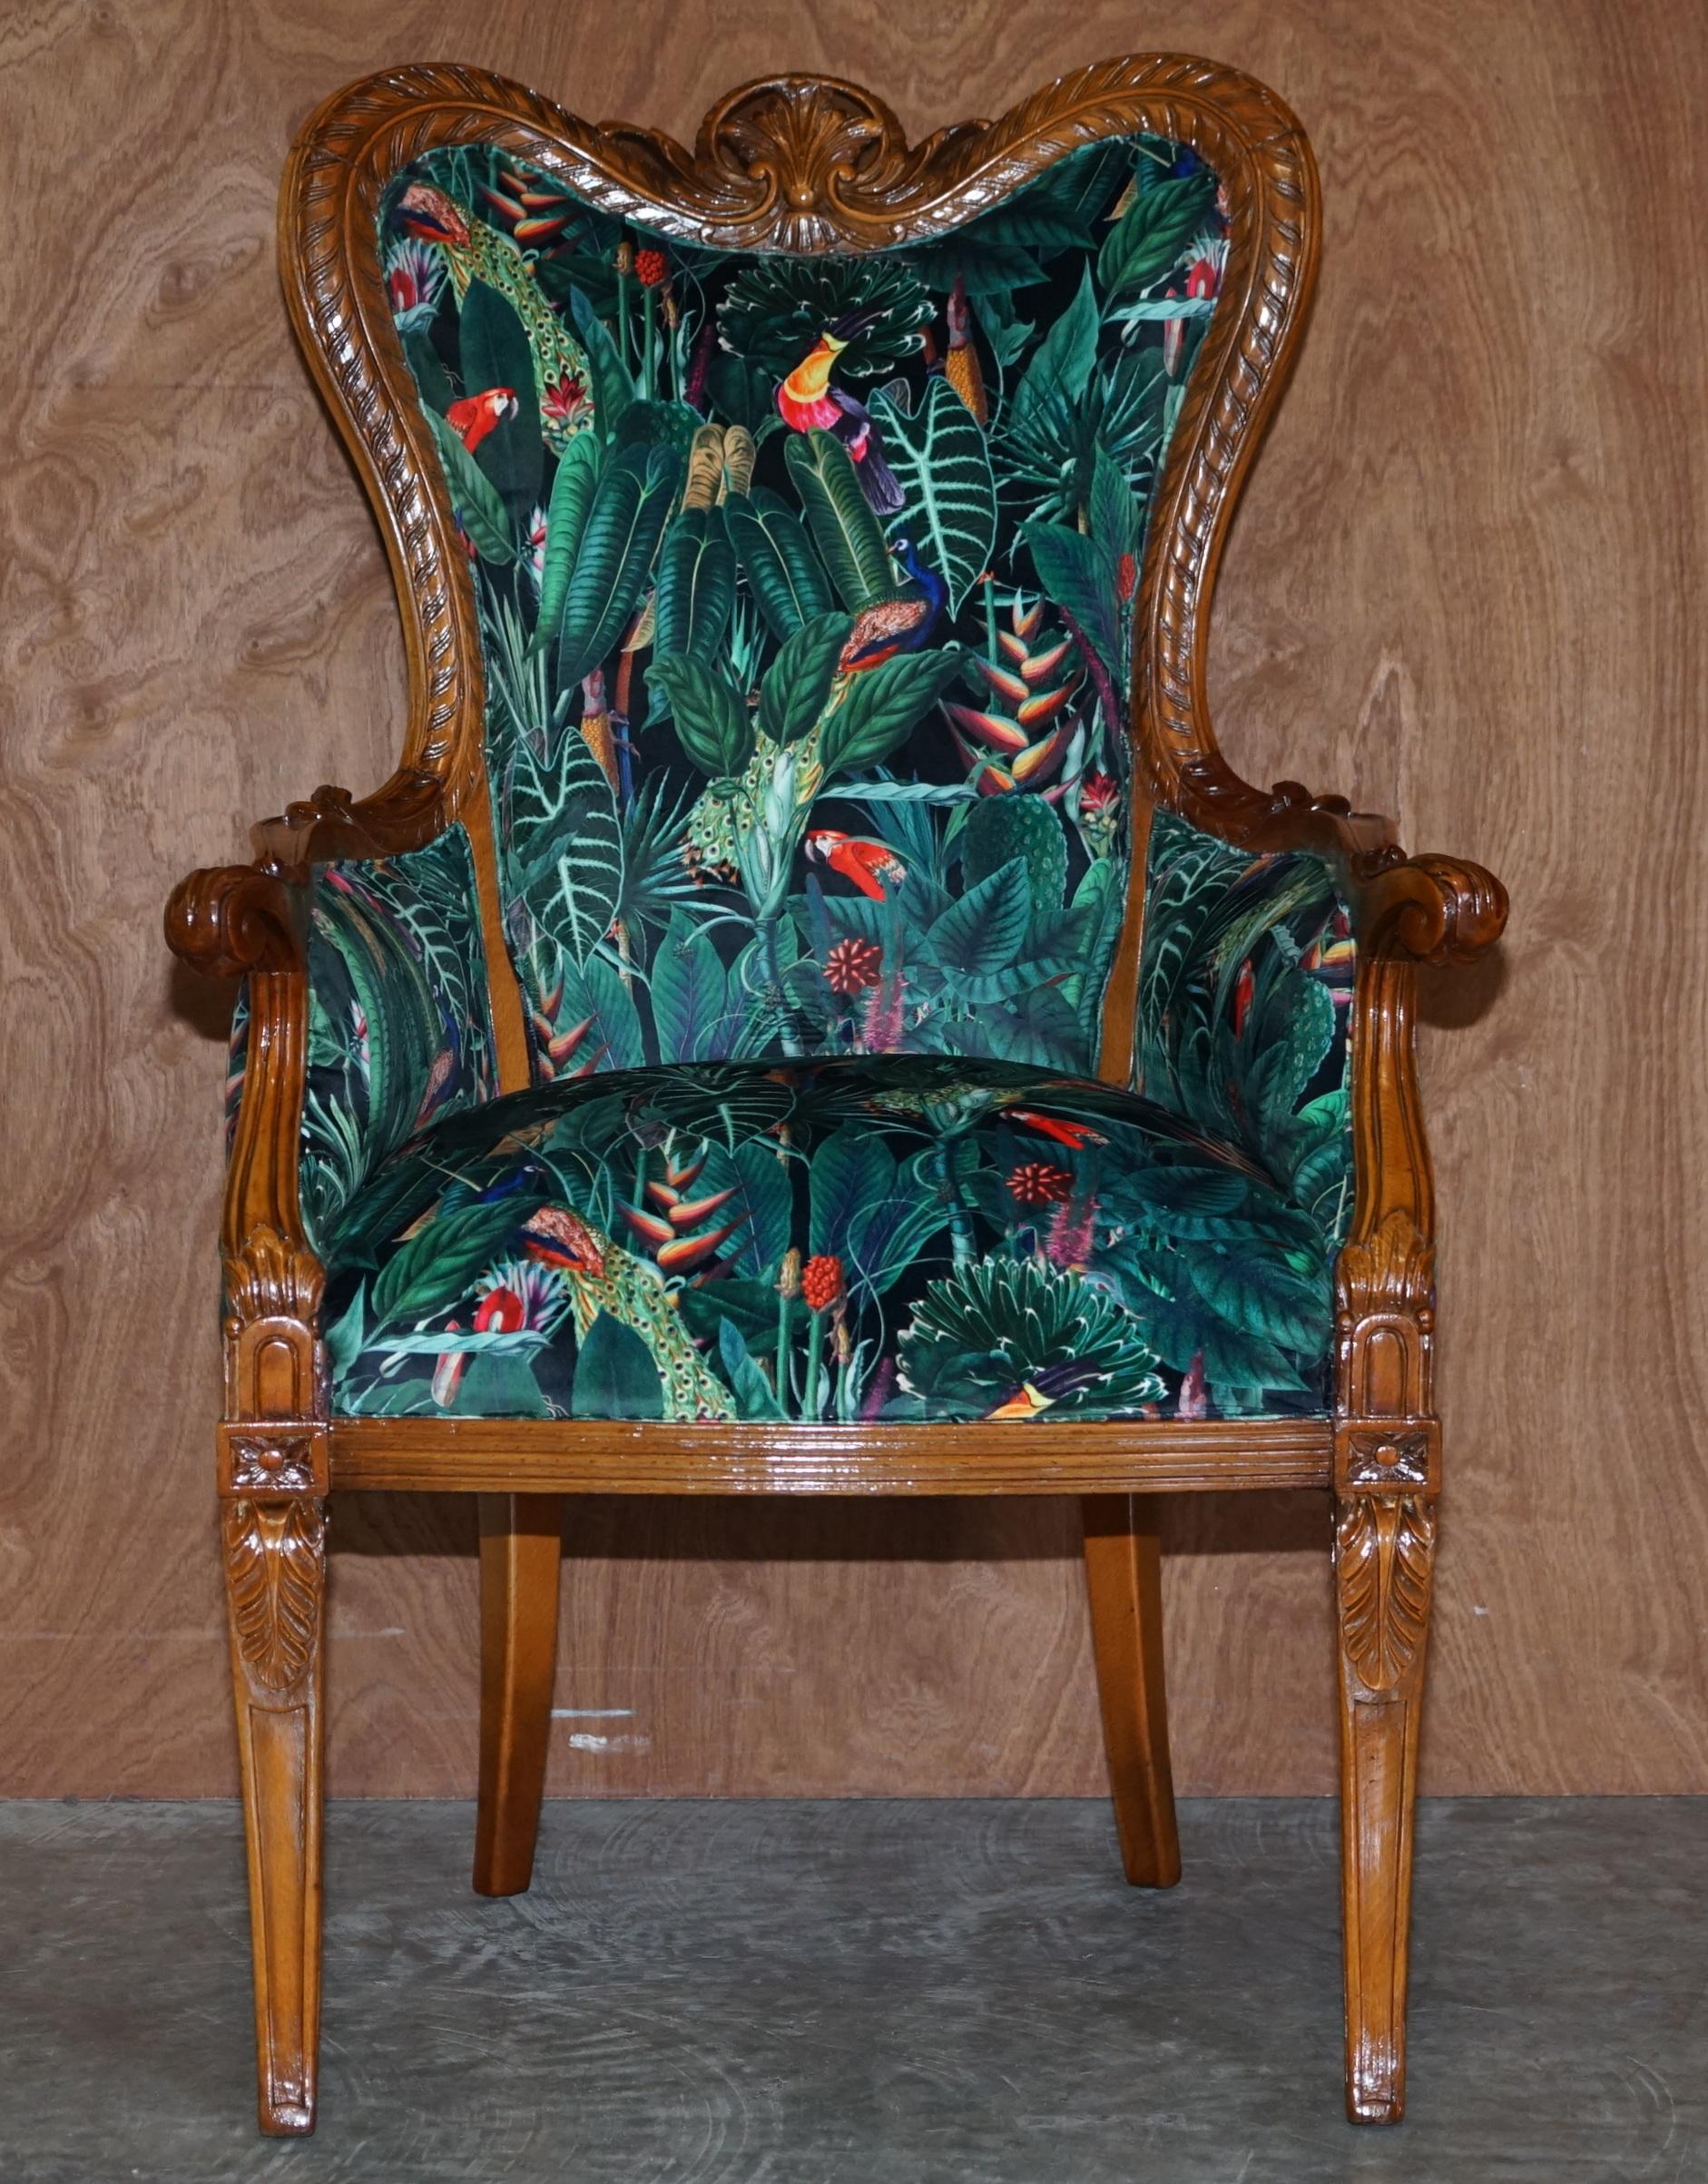 Wir freuen uns, diesen schönen italienischen Sessel mit geschnitztem Nussbaumgestell anbieten zu können, der mit dem samtigen Stoff Birds of Paradise neu gepolstert wurde

Das Stück ist Teil einer Suite, insgesamt habe ich einen geschnitzten